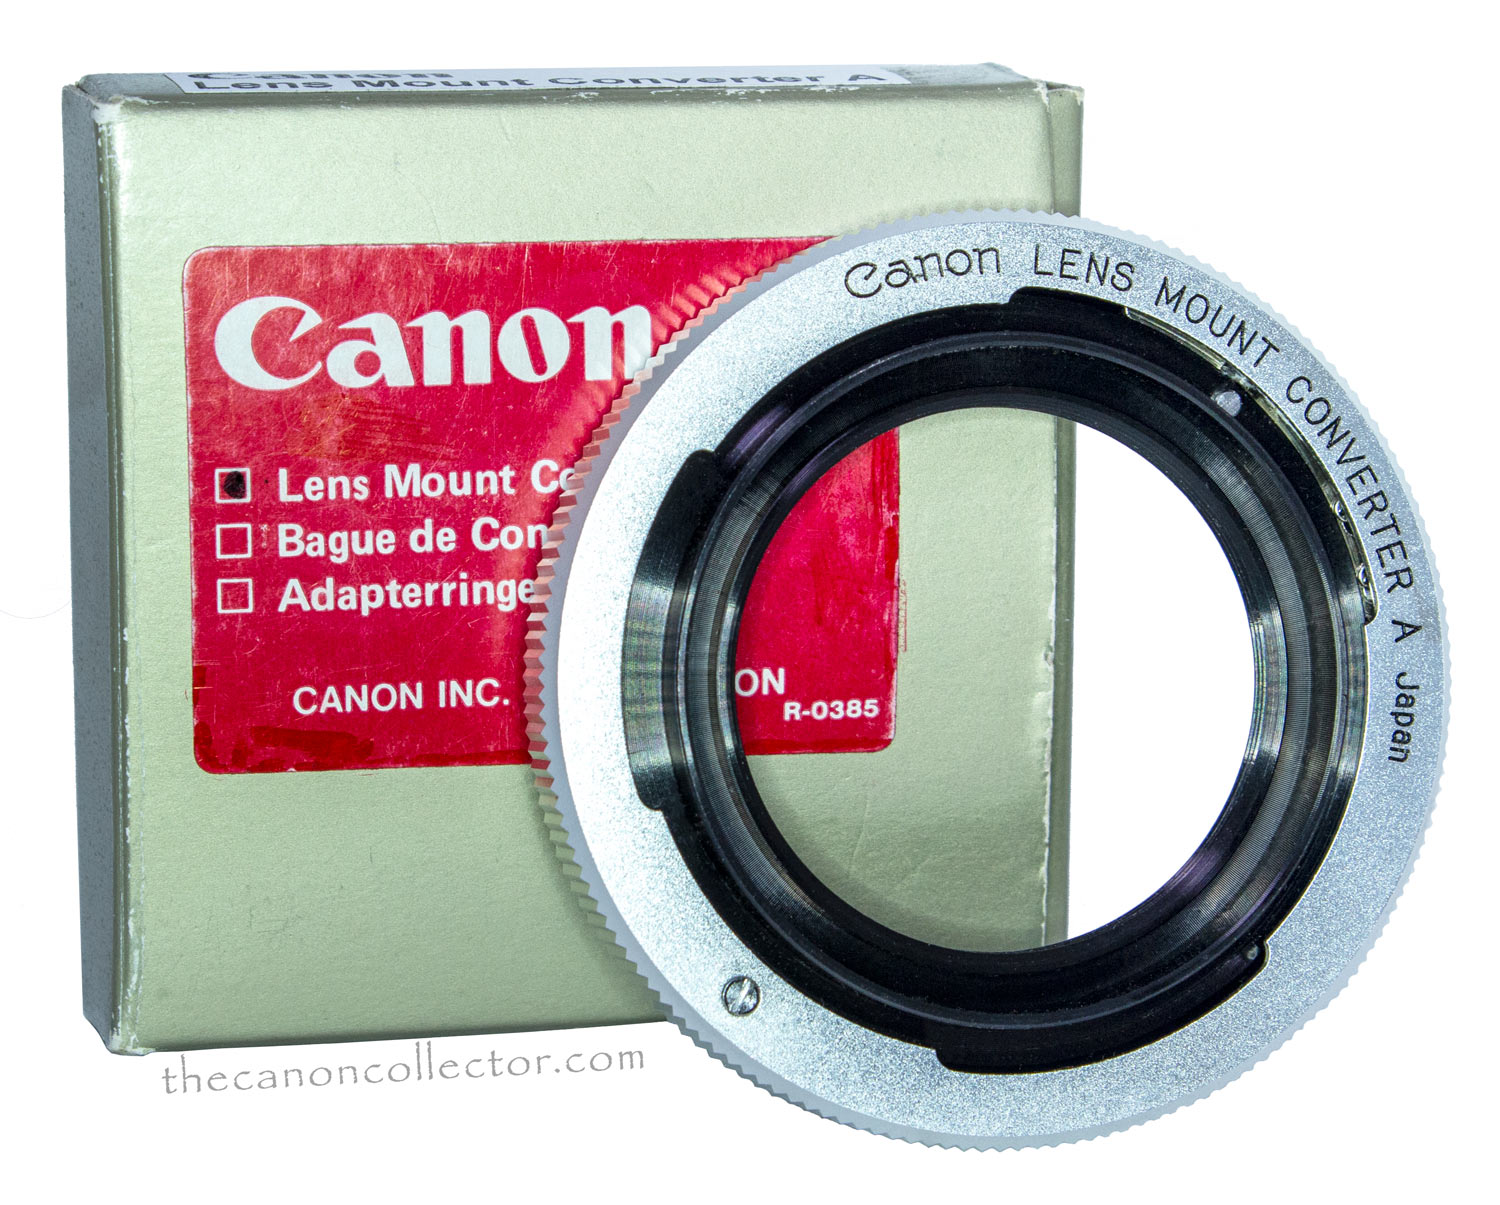 Canon Lens Mount Converter A